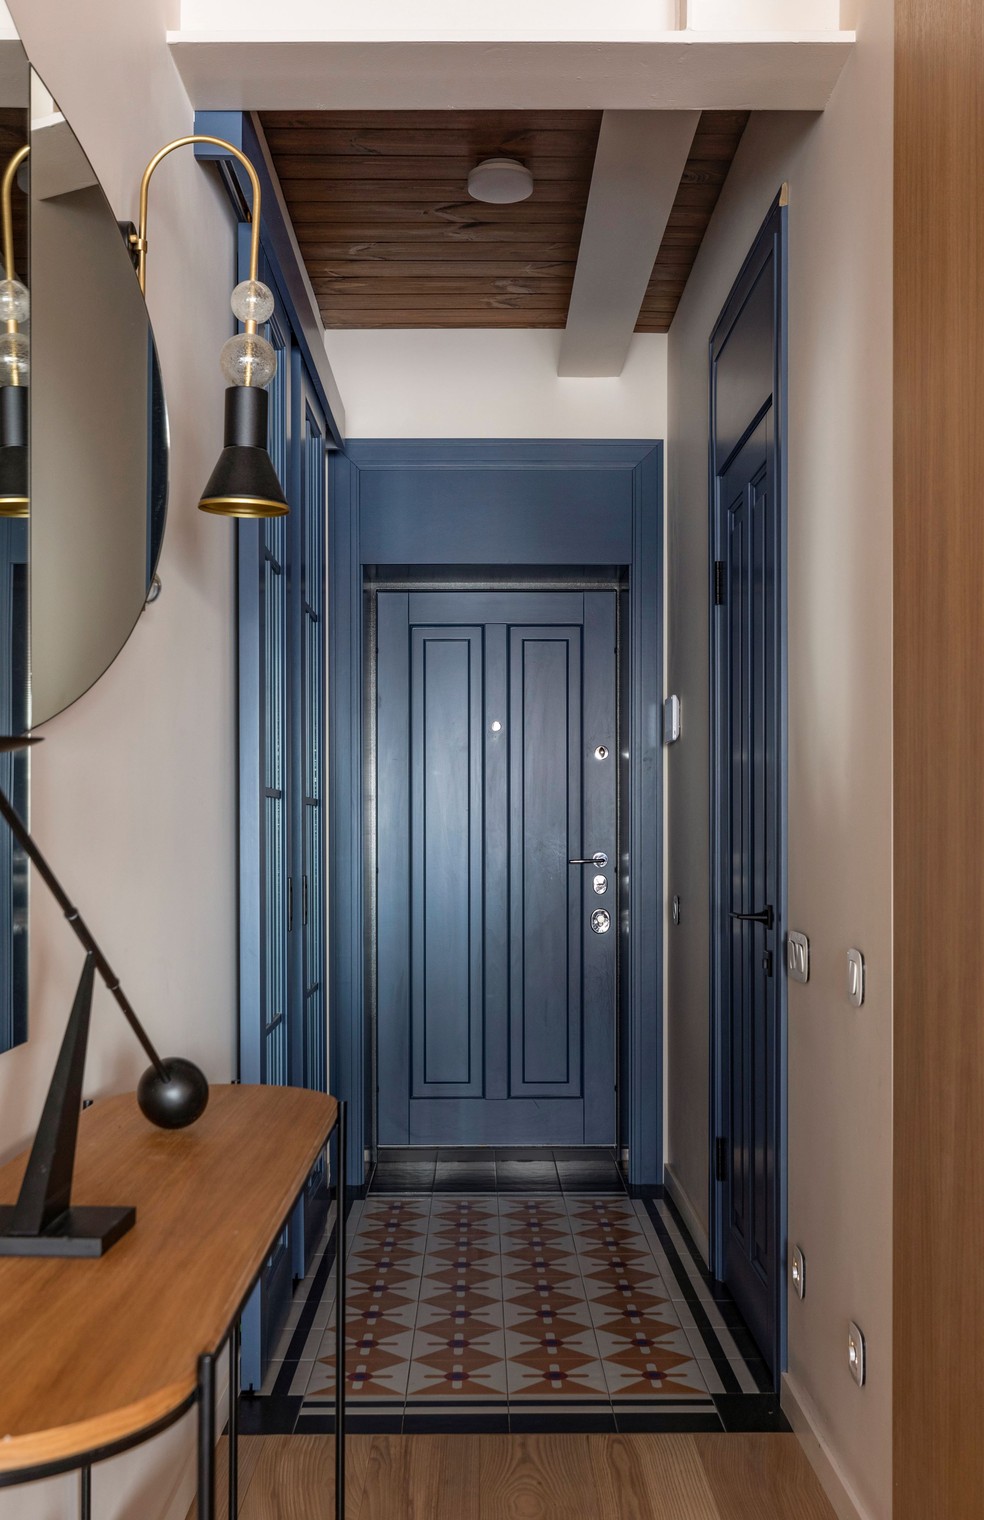 O hall de entrada difere do restante do apartamento ao explorar as estampas do piso de ladrilho hidráulico e o tom fechado de azul das portas — Foto: Yevhenii Avramenko